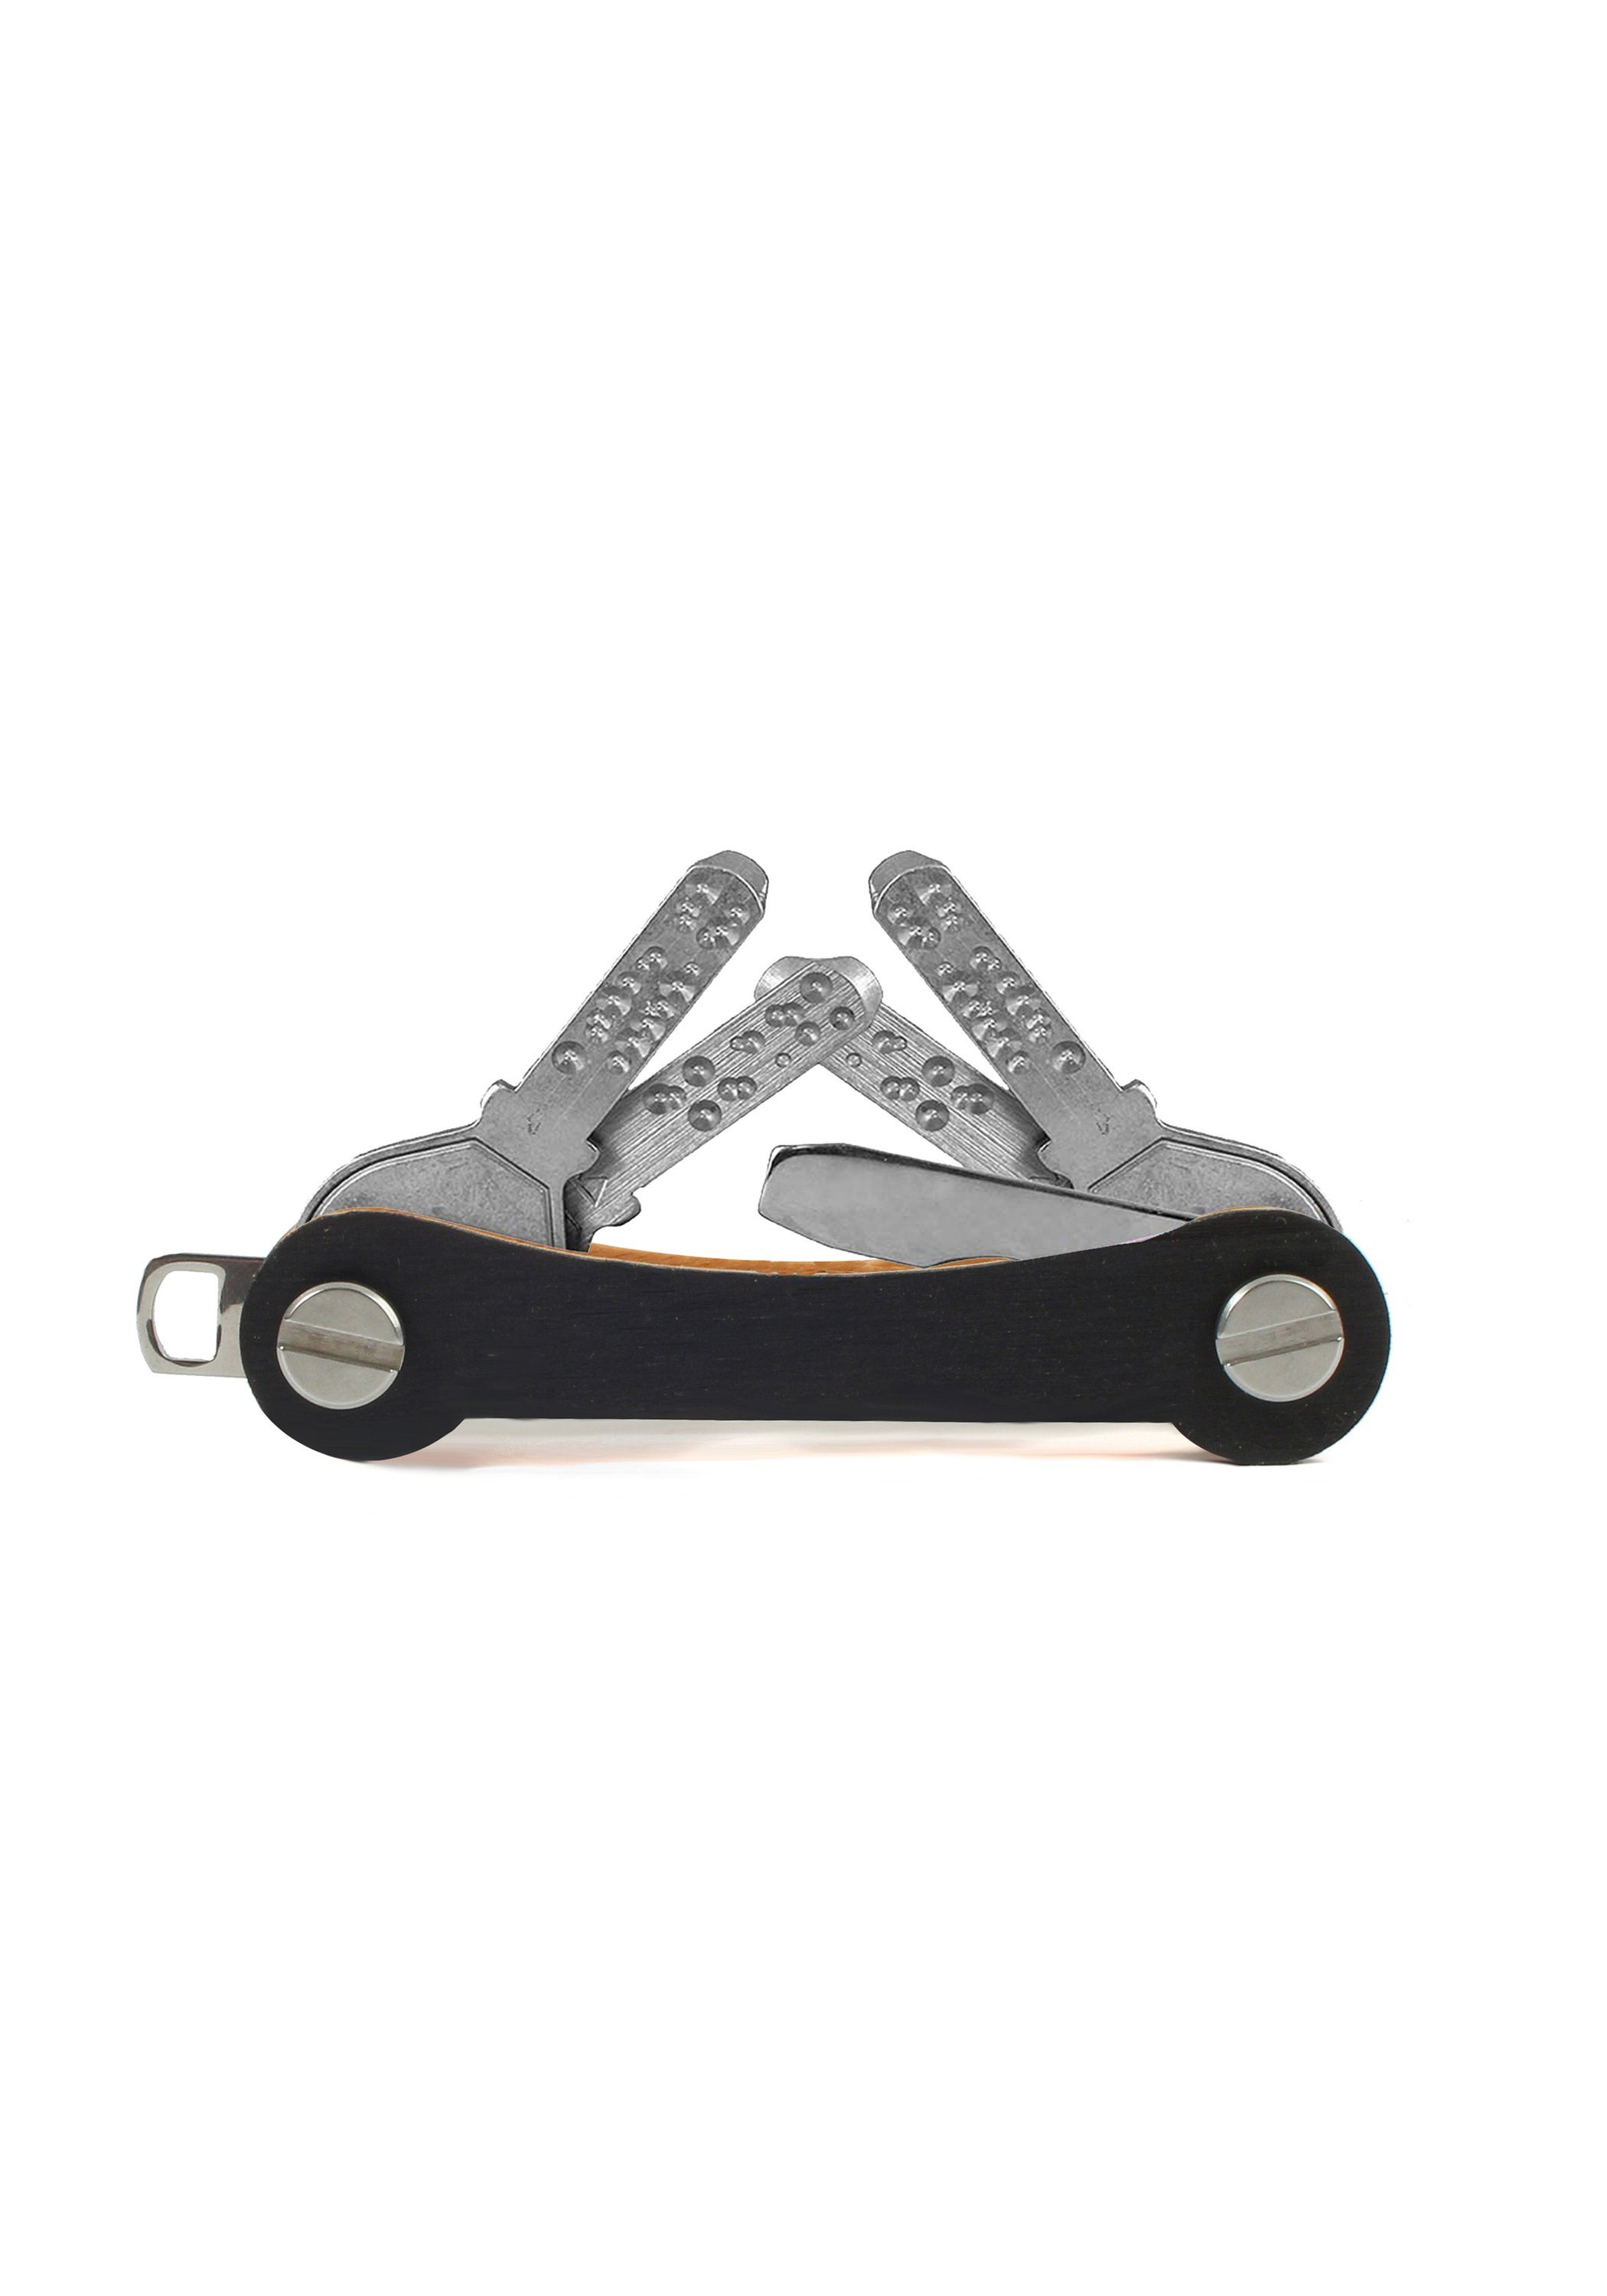 SWISS S1, Schlüsselanhänger schwarz keycabins made Snowboard-Ski